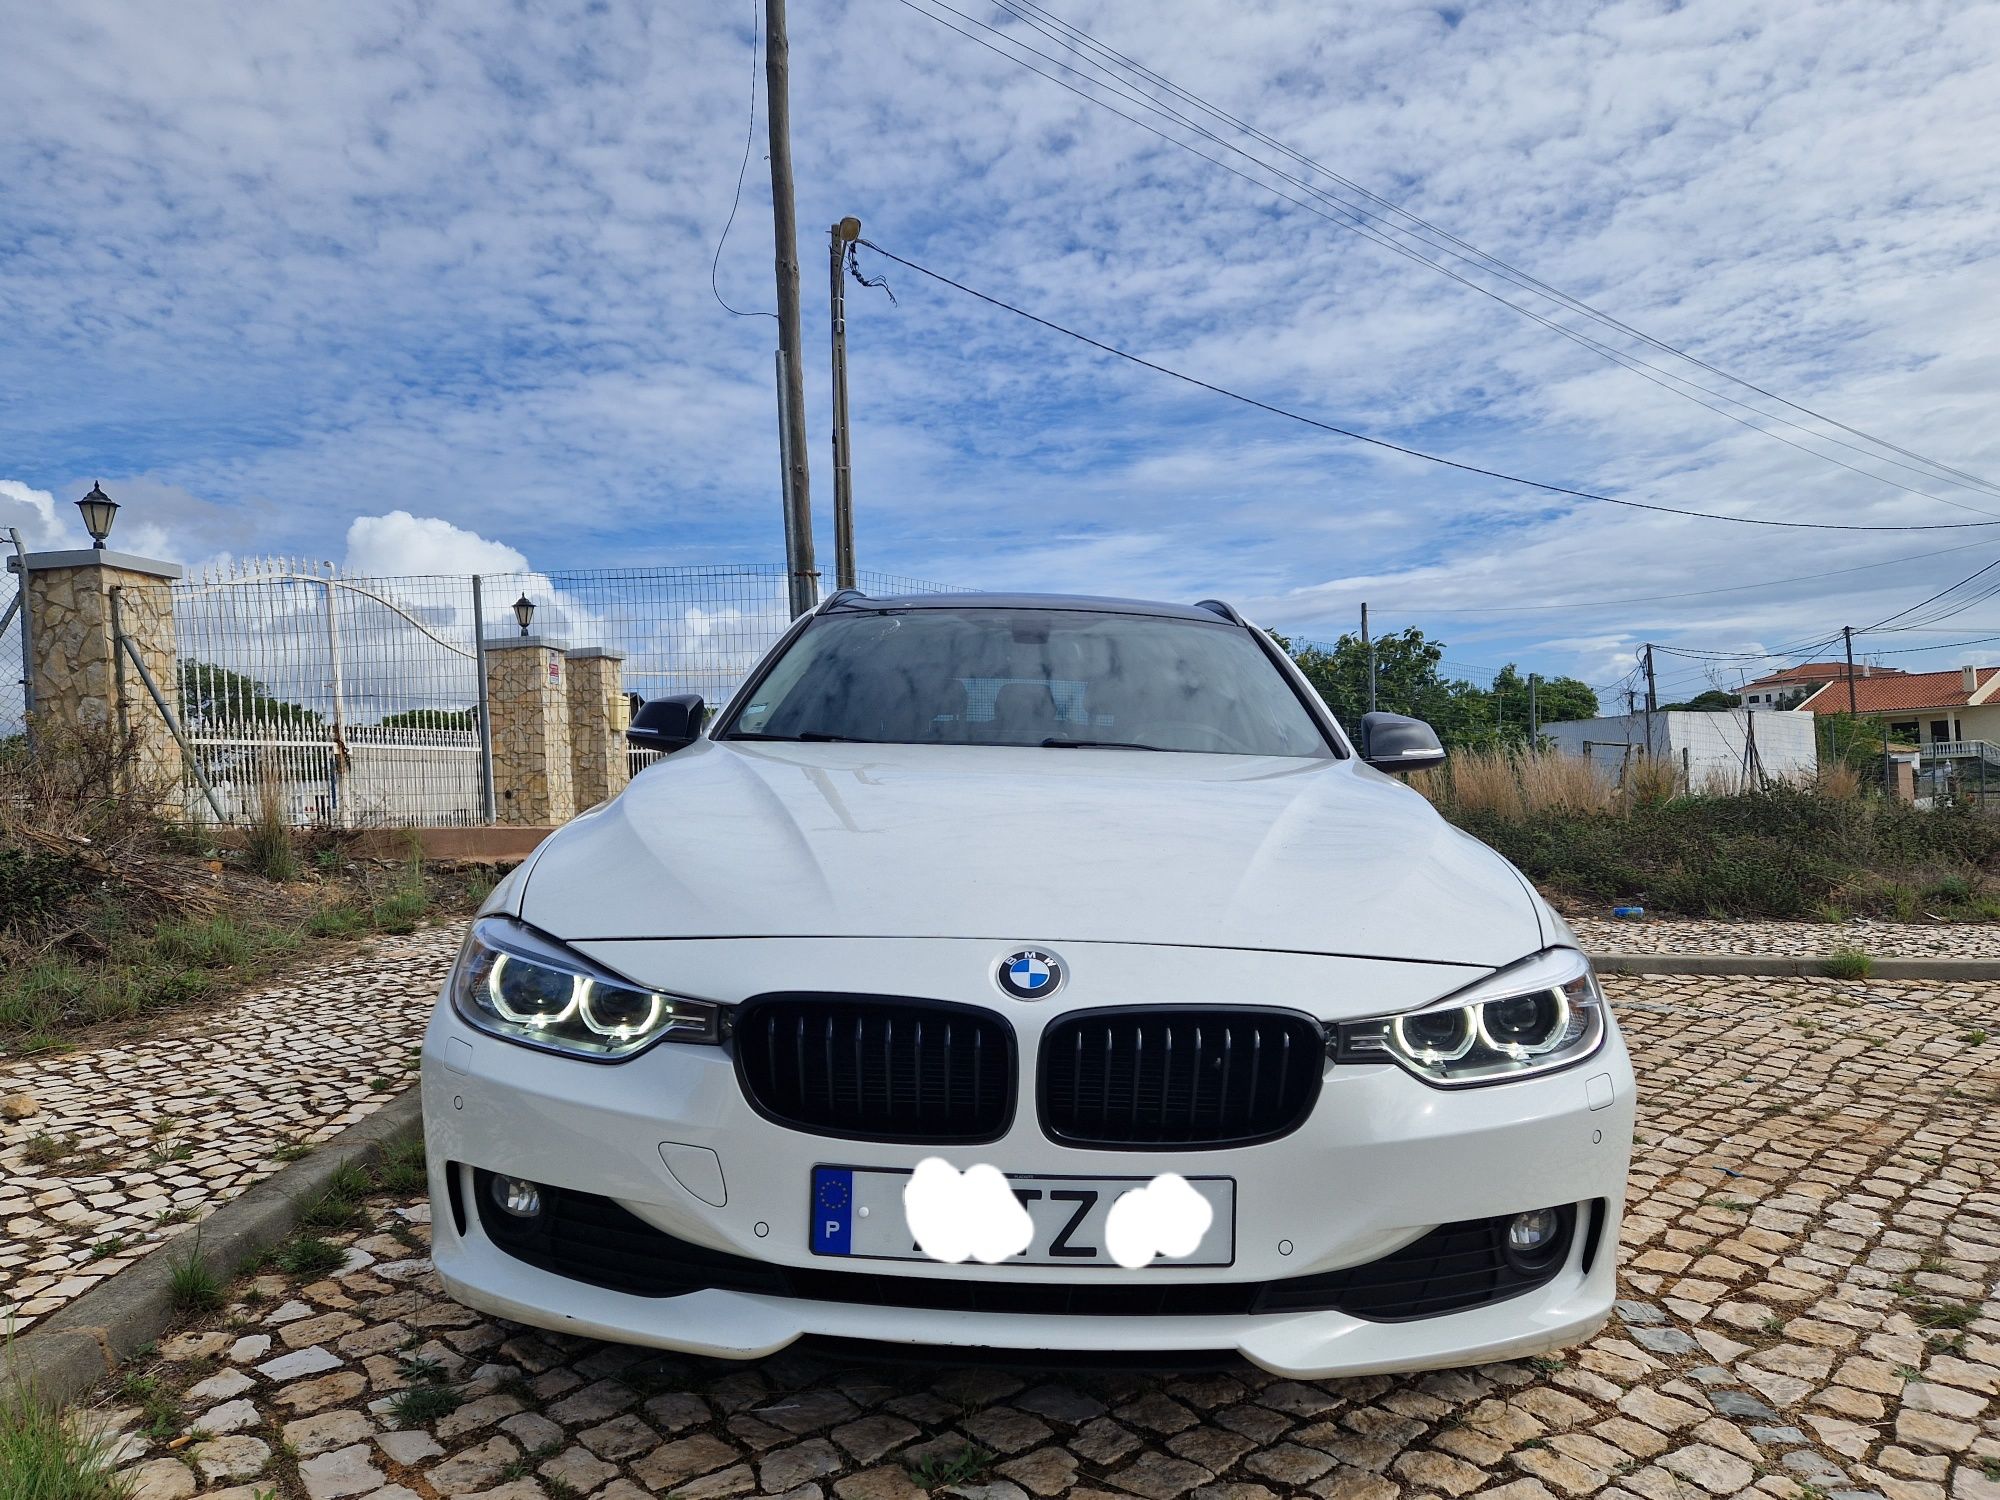 Financiamento - BMW em Campanhã - OLX Portugal